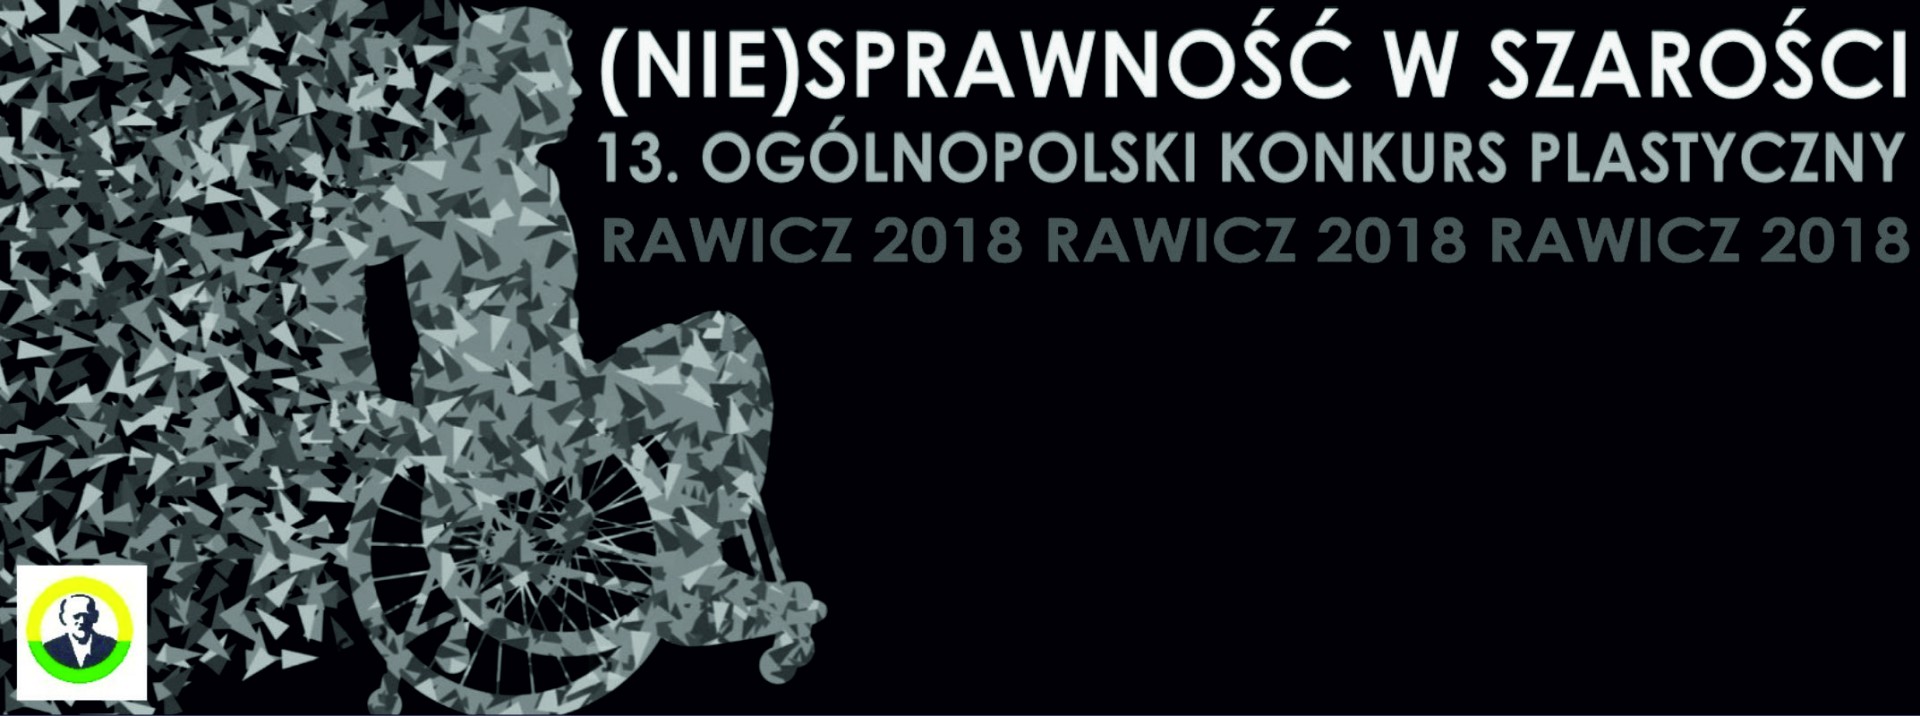 Wyniki Ogólnopolskiego Konkursu Plastycznego „(Nie)sprawność w szarości”